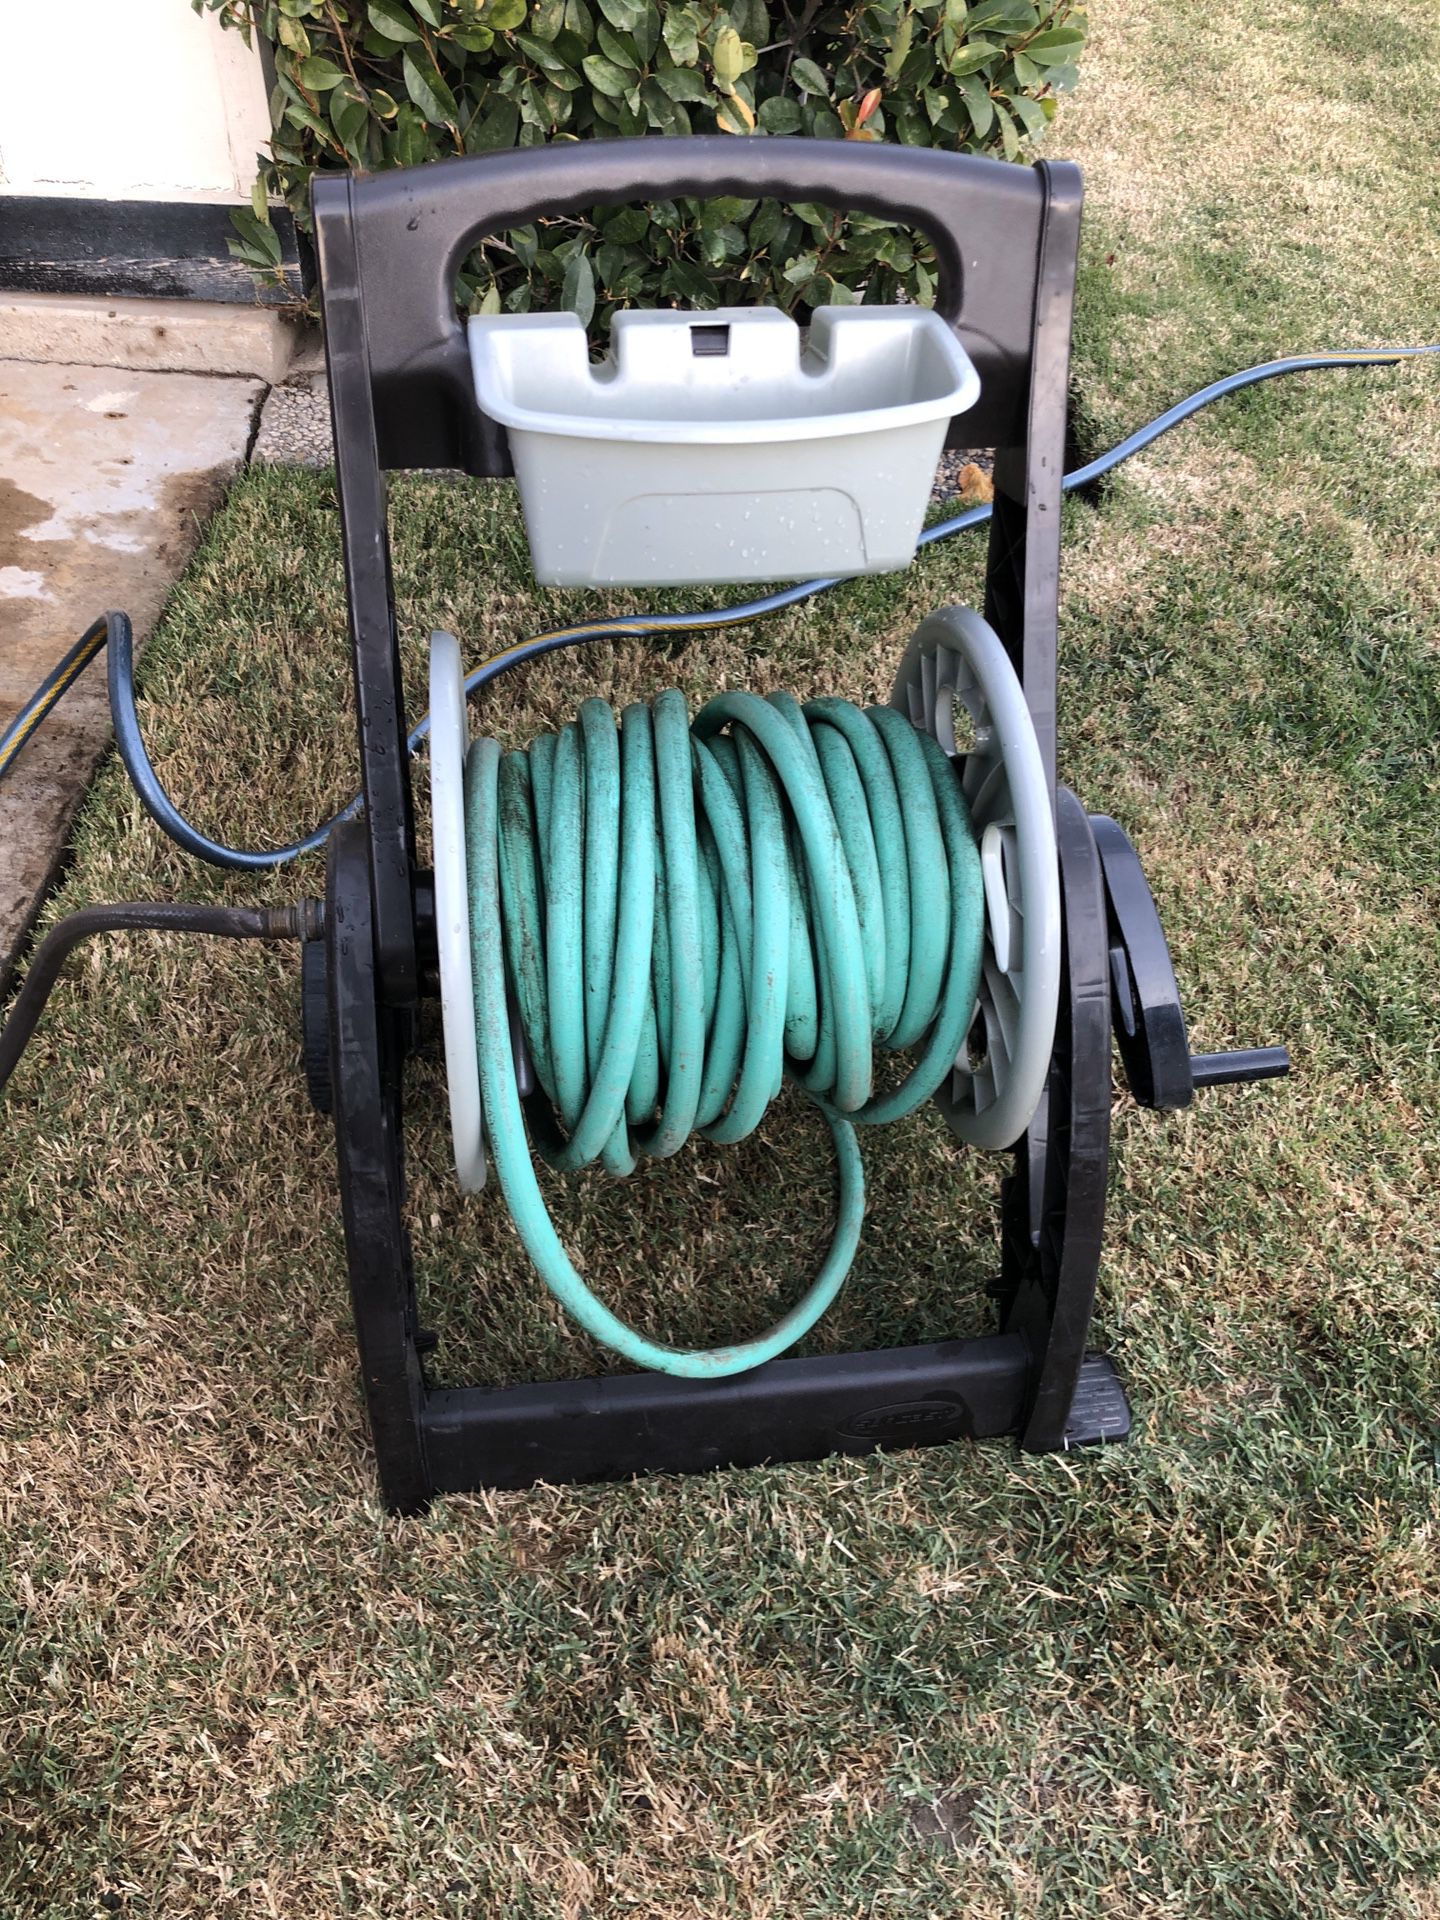 Garden hose and hose cart